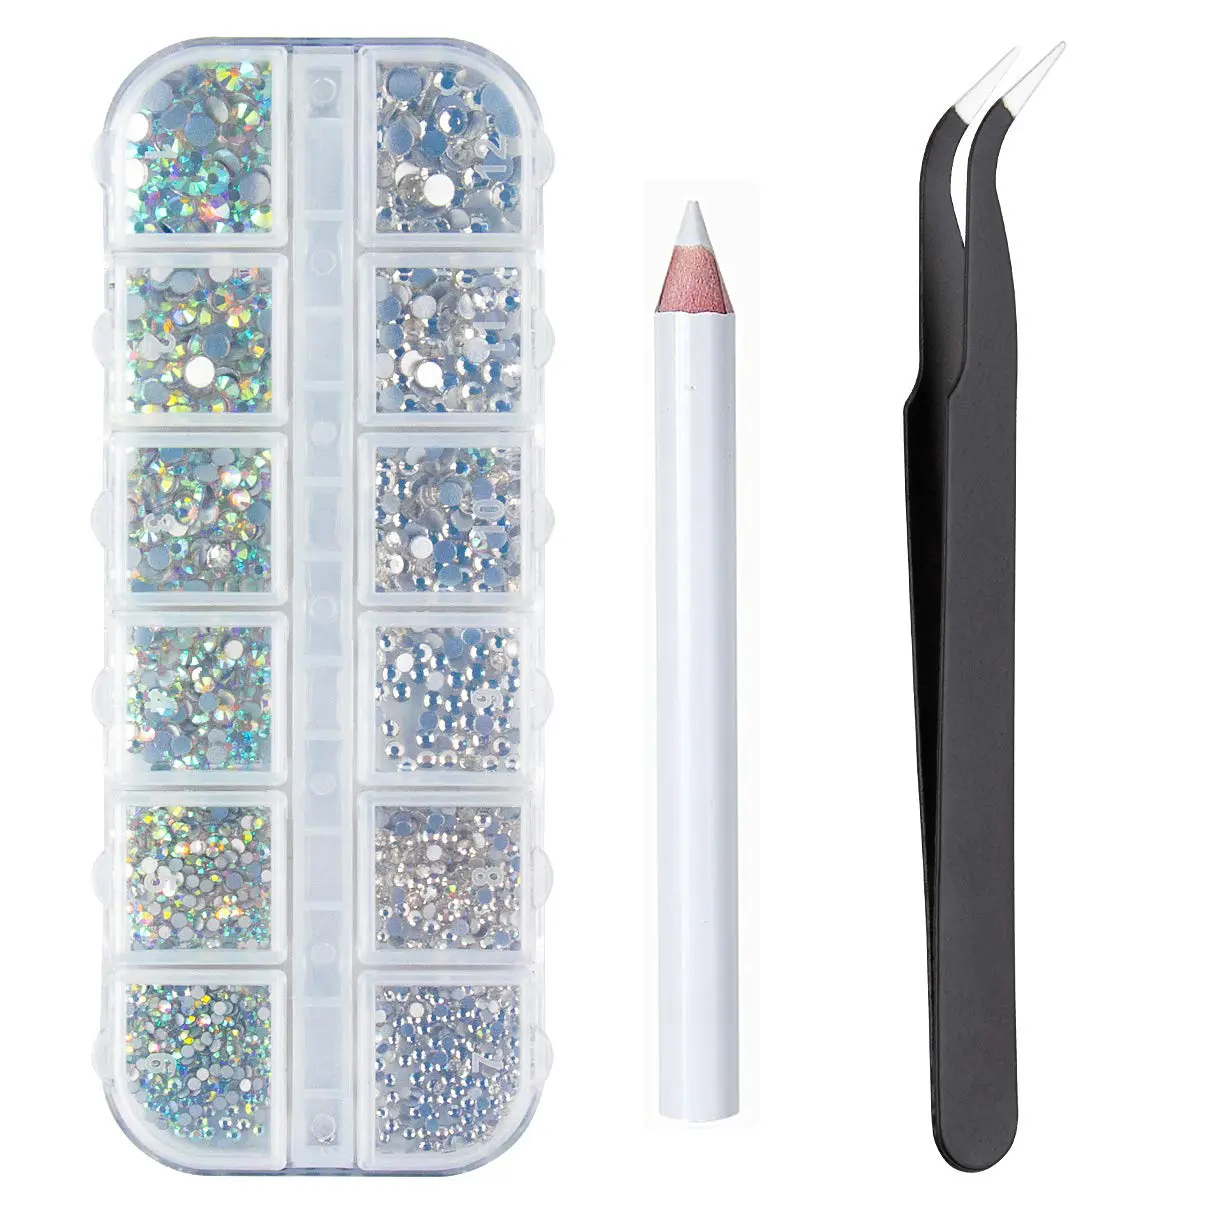 Jc caixa de cristal com 12 espaços para decoração, conjunto de ferramentas para arte em unhas, de vidro, com strass e lápis